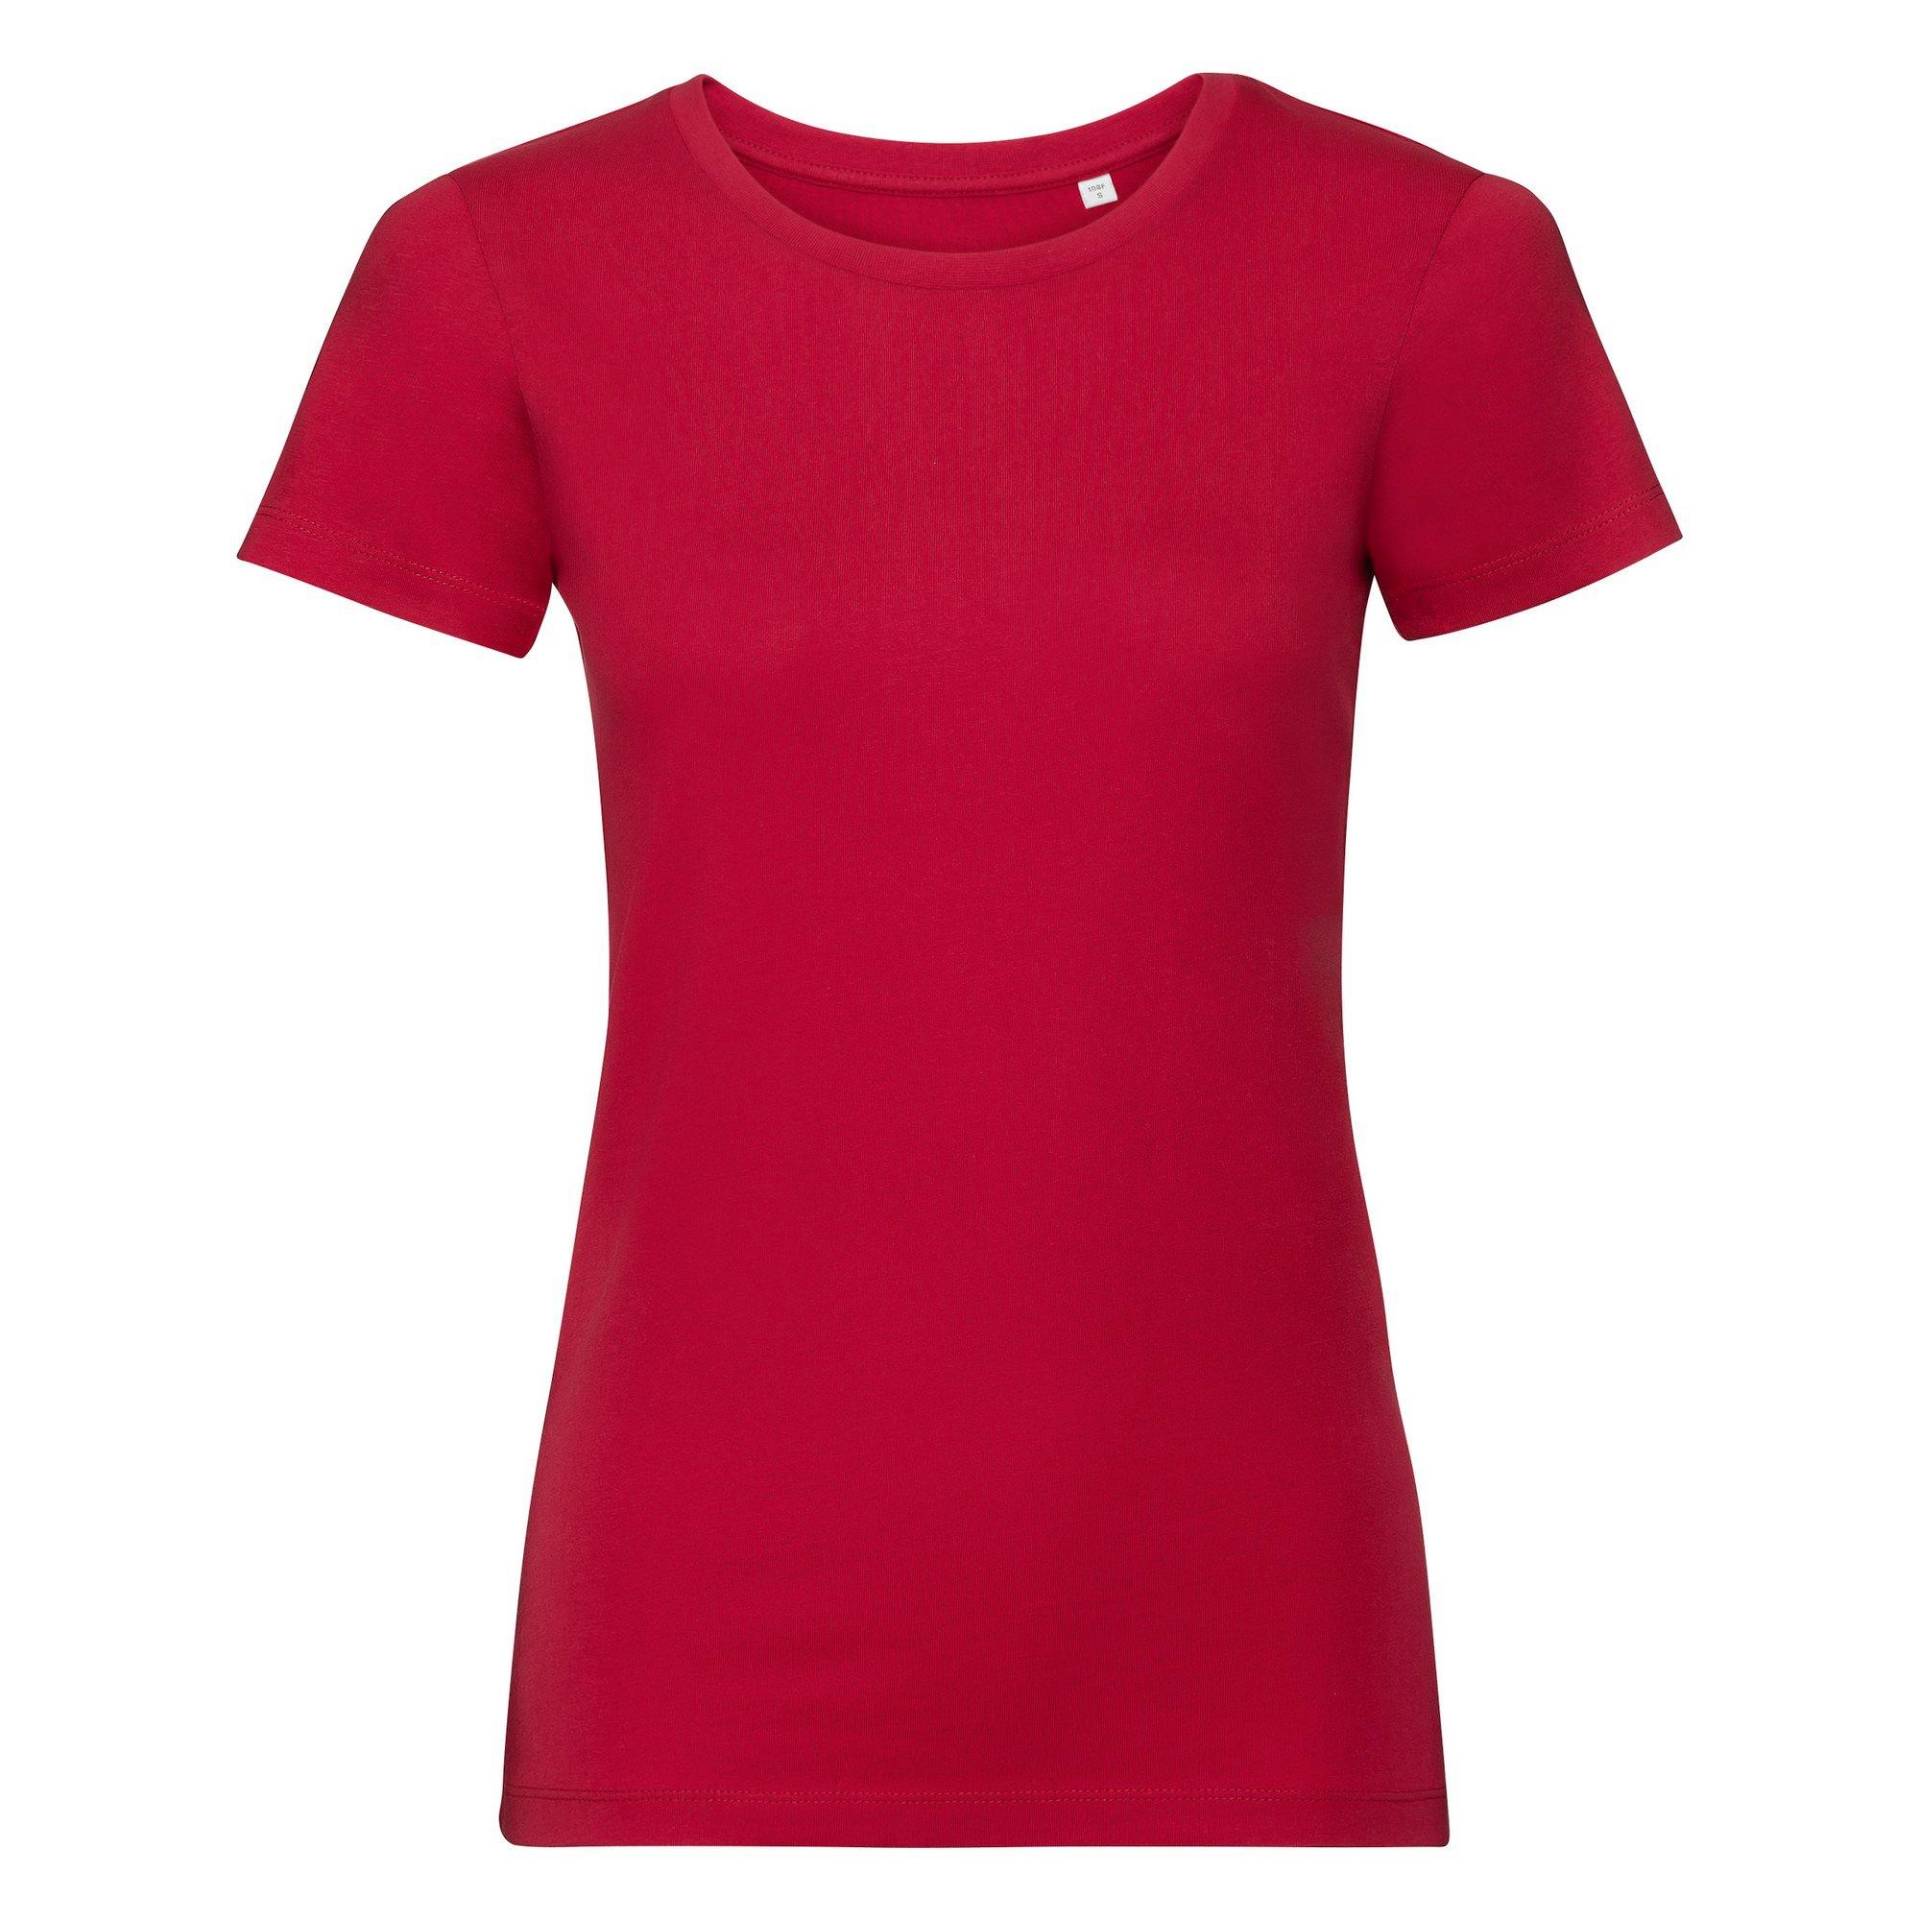 Authentic Tshirt Damen Rot Bunt XL von Russell